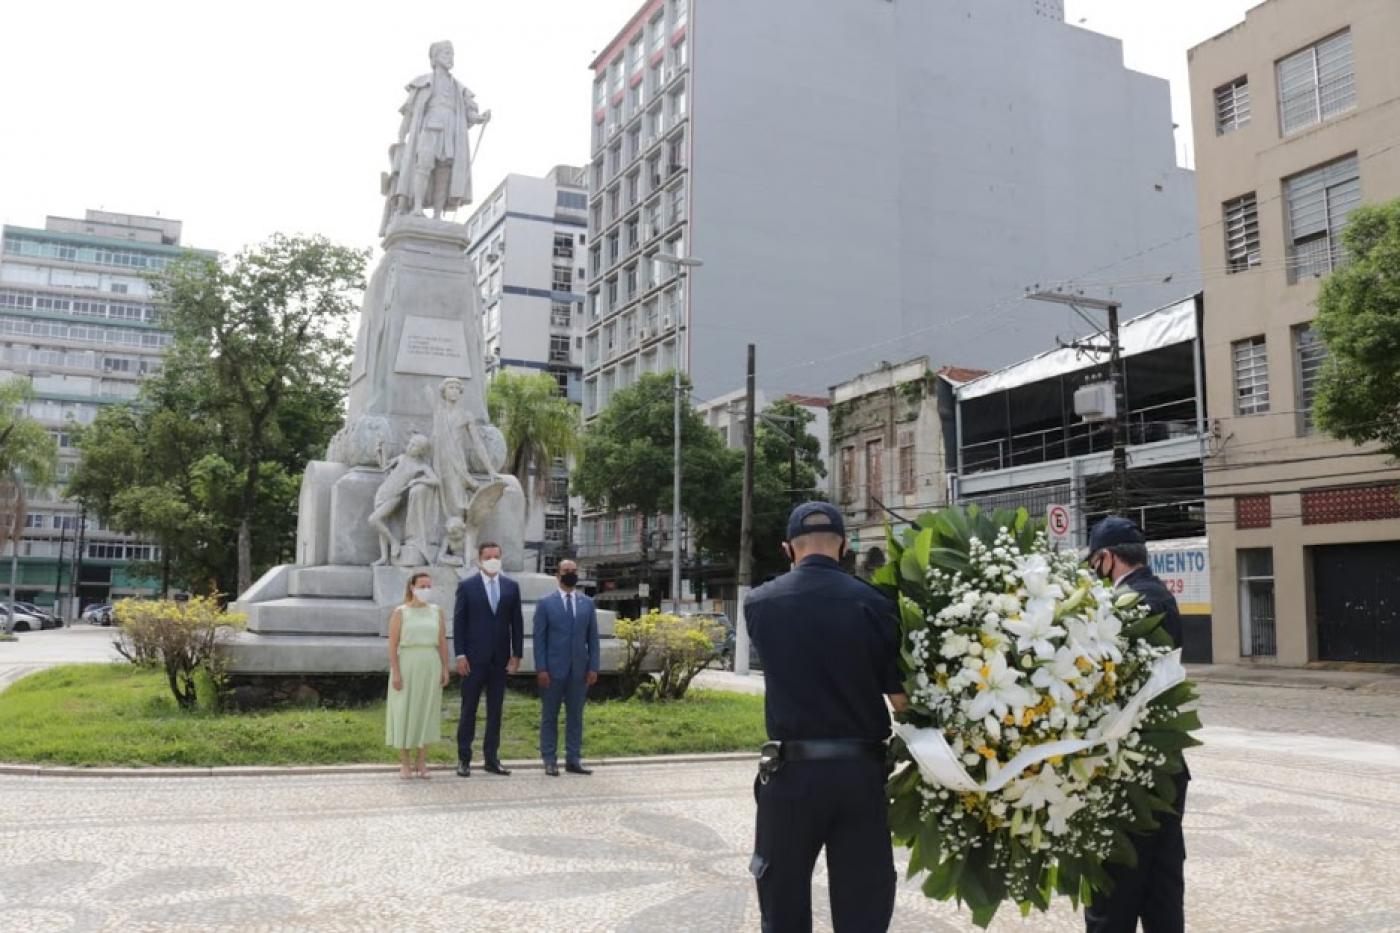 Guardas carregam flores para deposição no monumento de Braz Cubas.